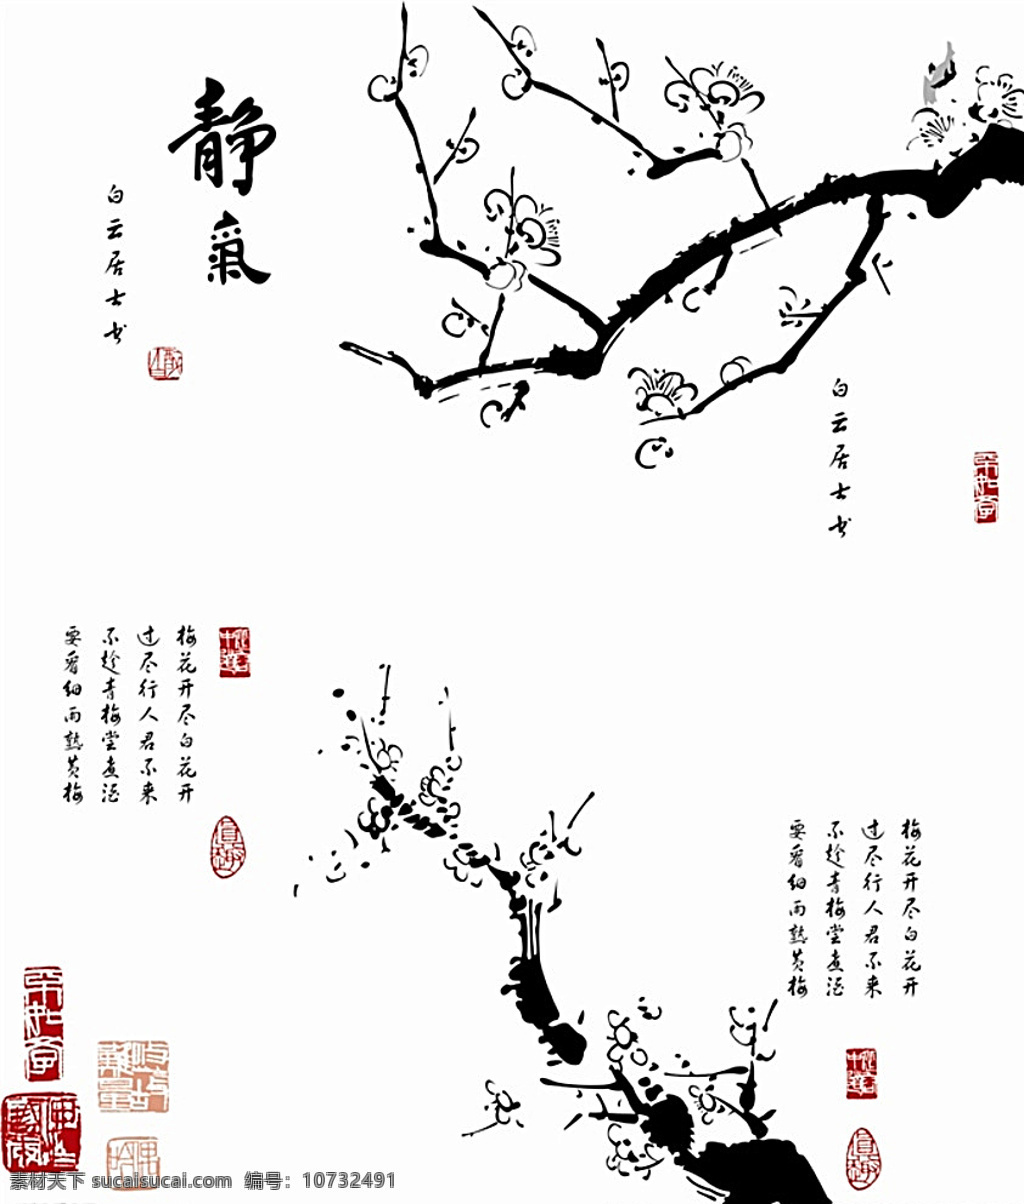 中国元素素材 梅花 矢量 可编辑 文字 印章 中国风 毛笔素材 白色